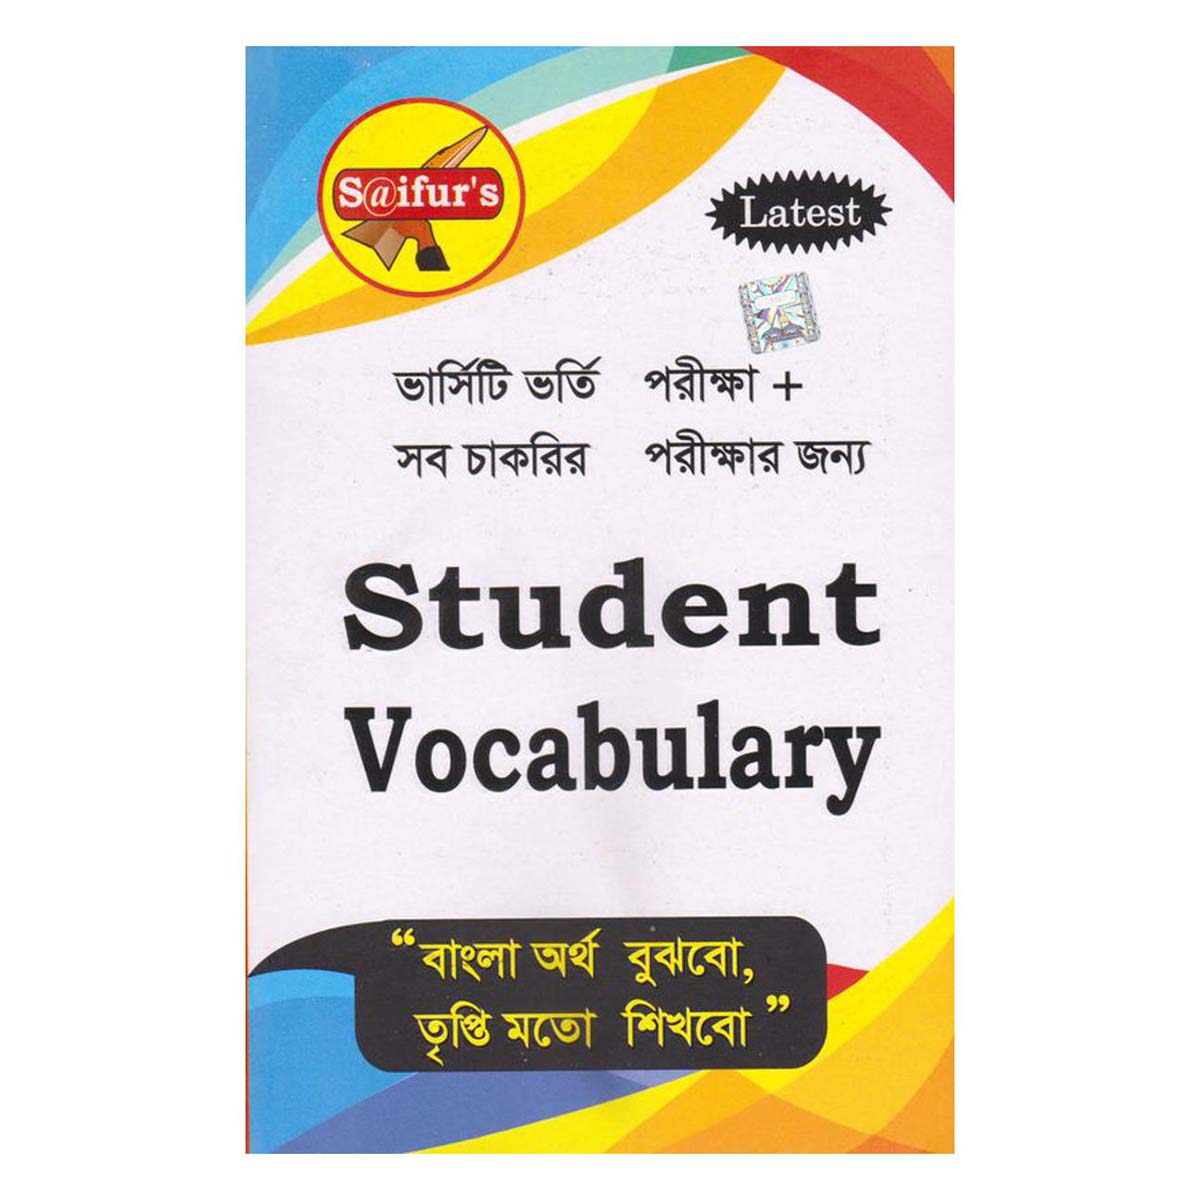 Saifur's Student Vocabulary / সাইফুর’স ‍স্টুডেন্ট ভোকাবলারী